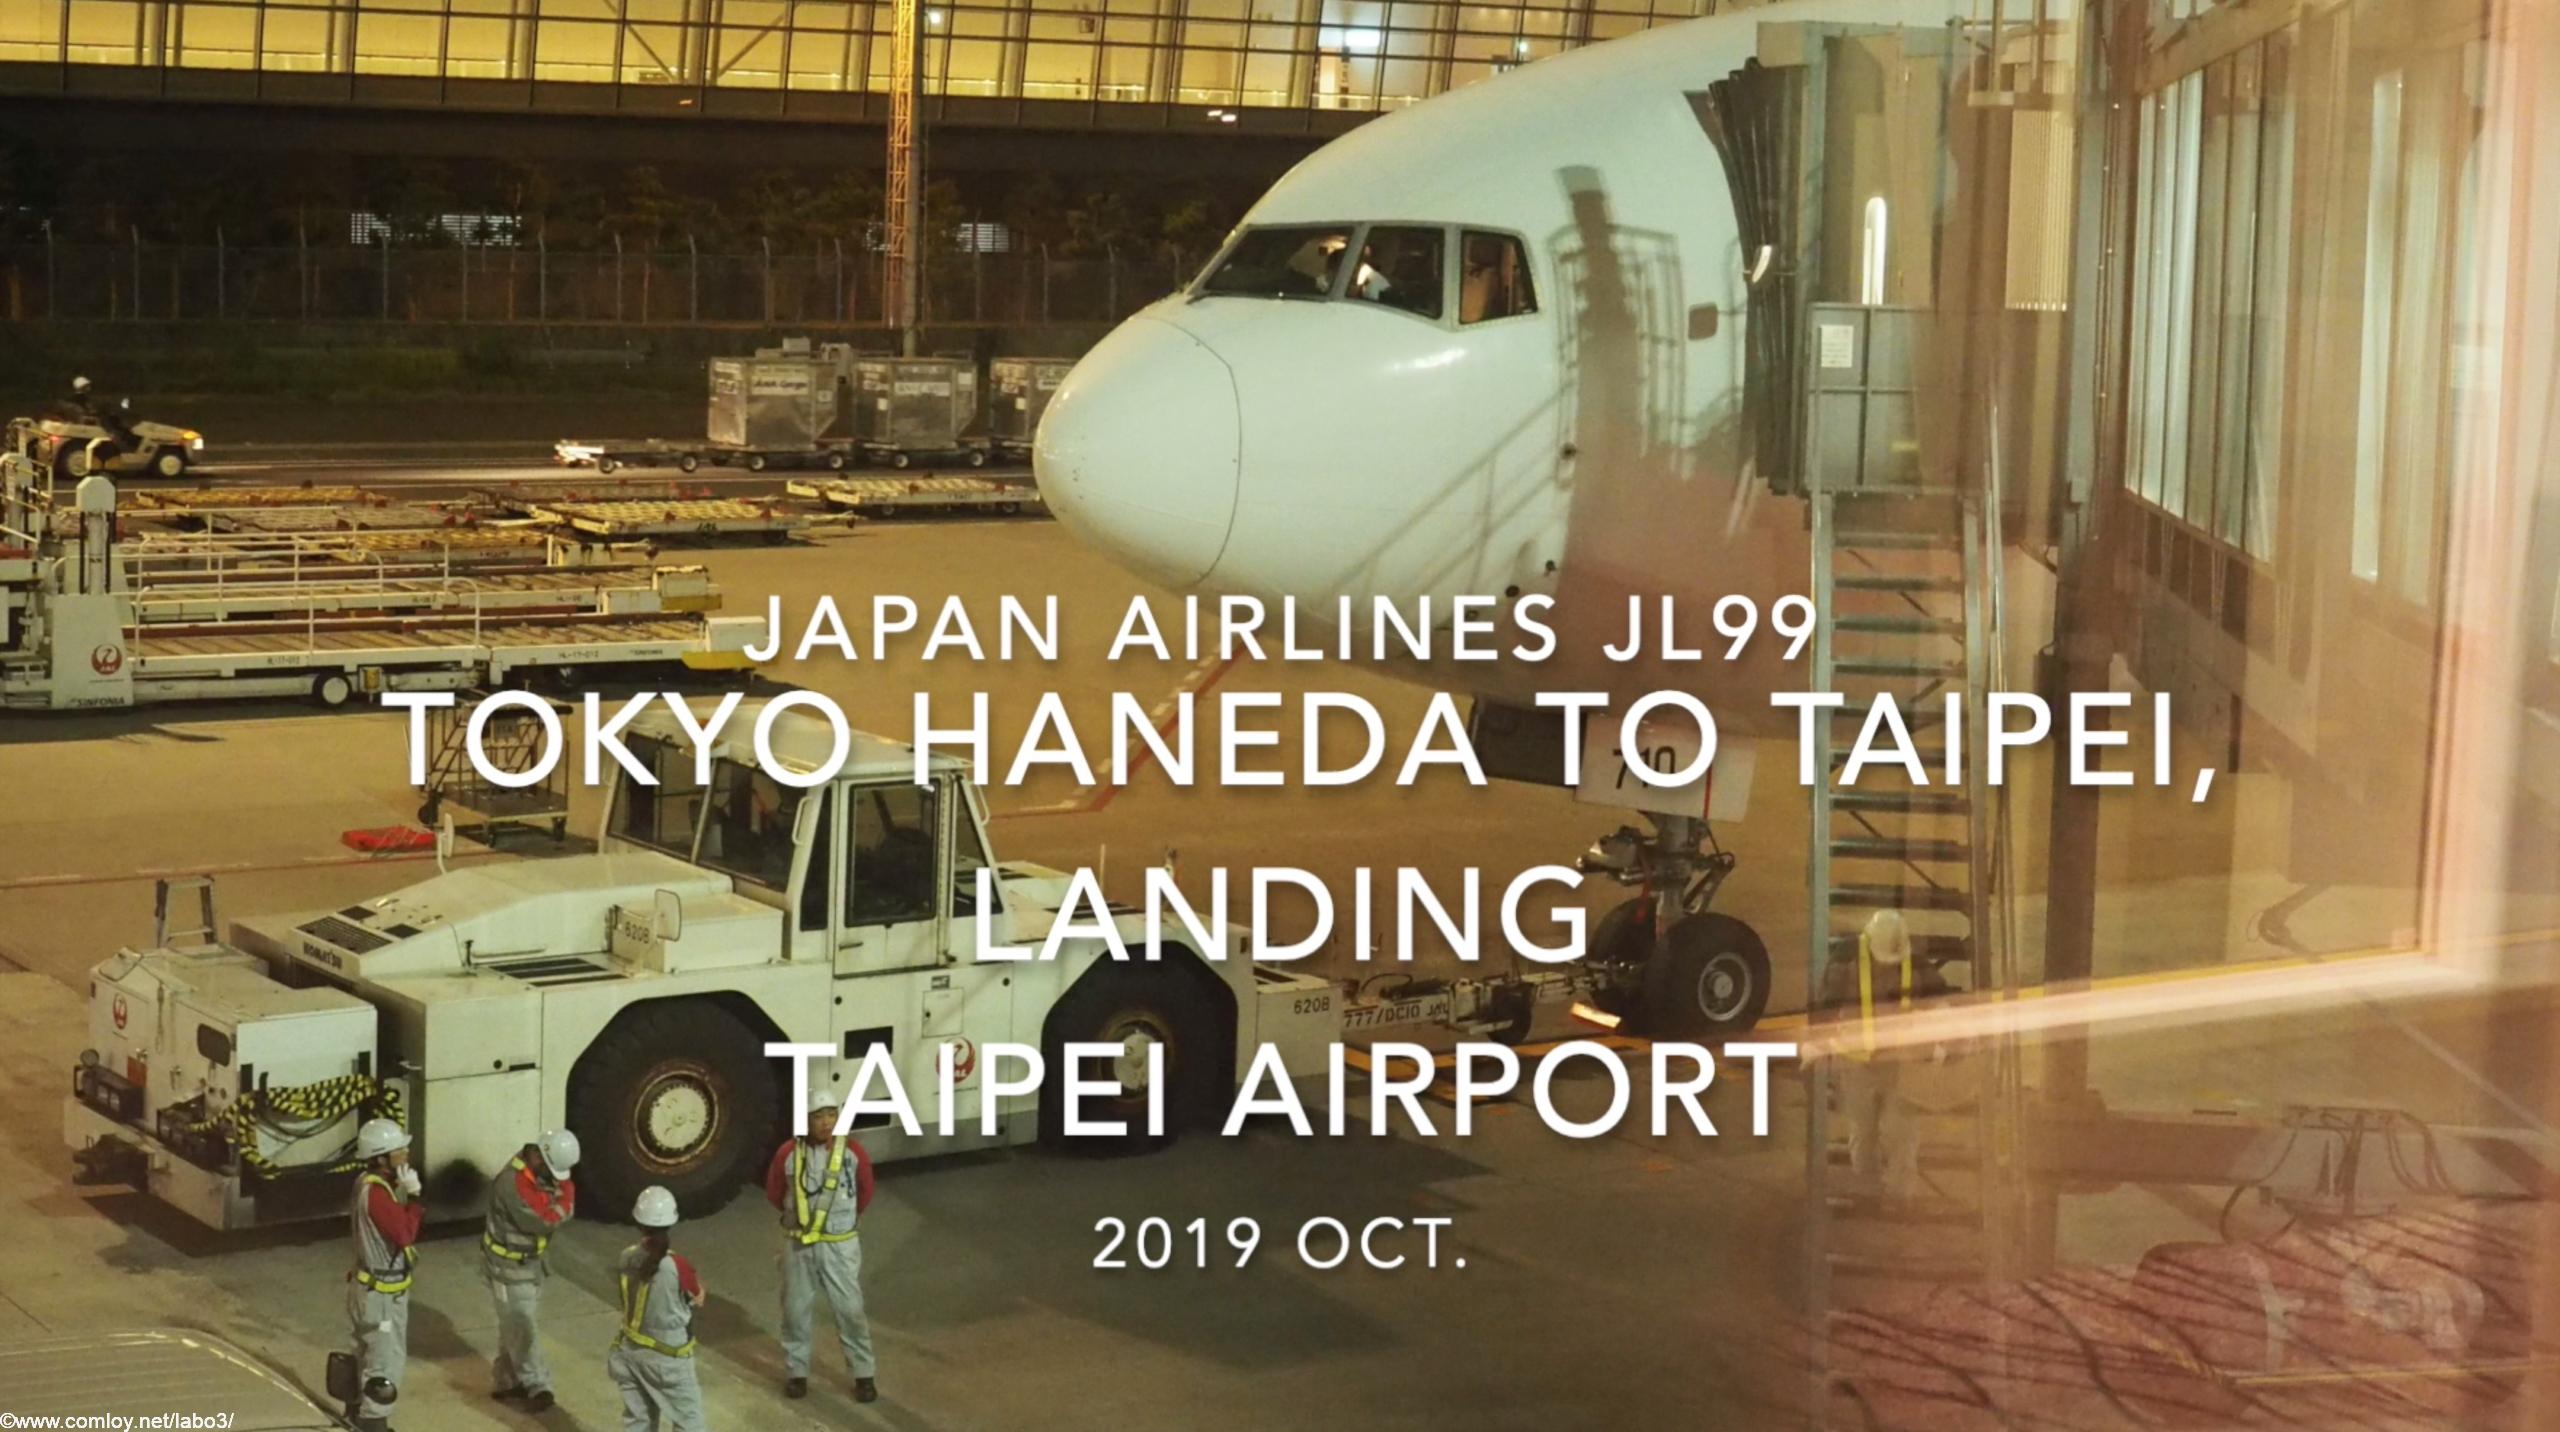 【機内から離着陸映像】2019 Oct Japan Airlines JL99 TOKYO HANEDA to TAIPEI, Landing TAIPEI Airport